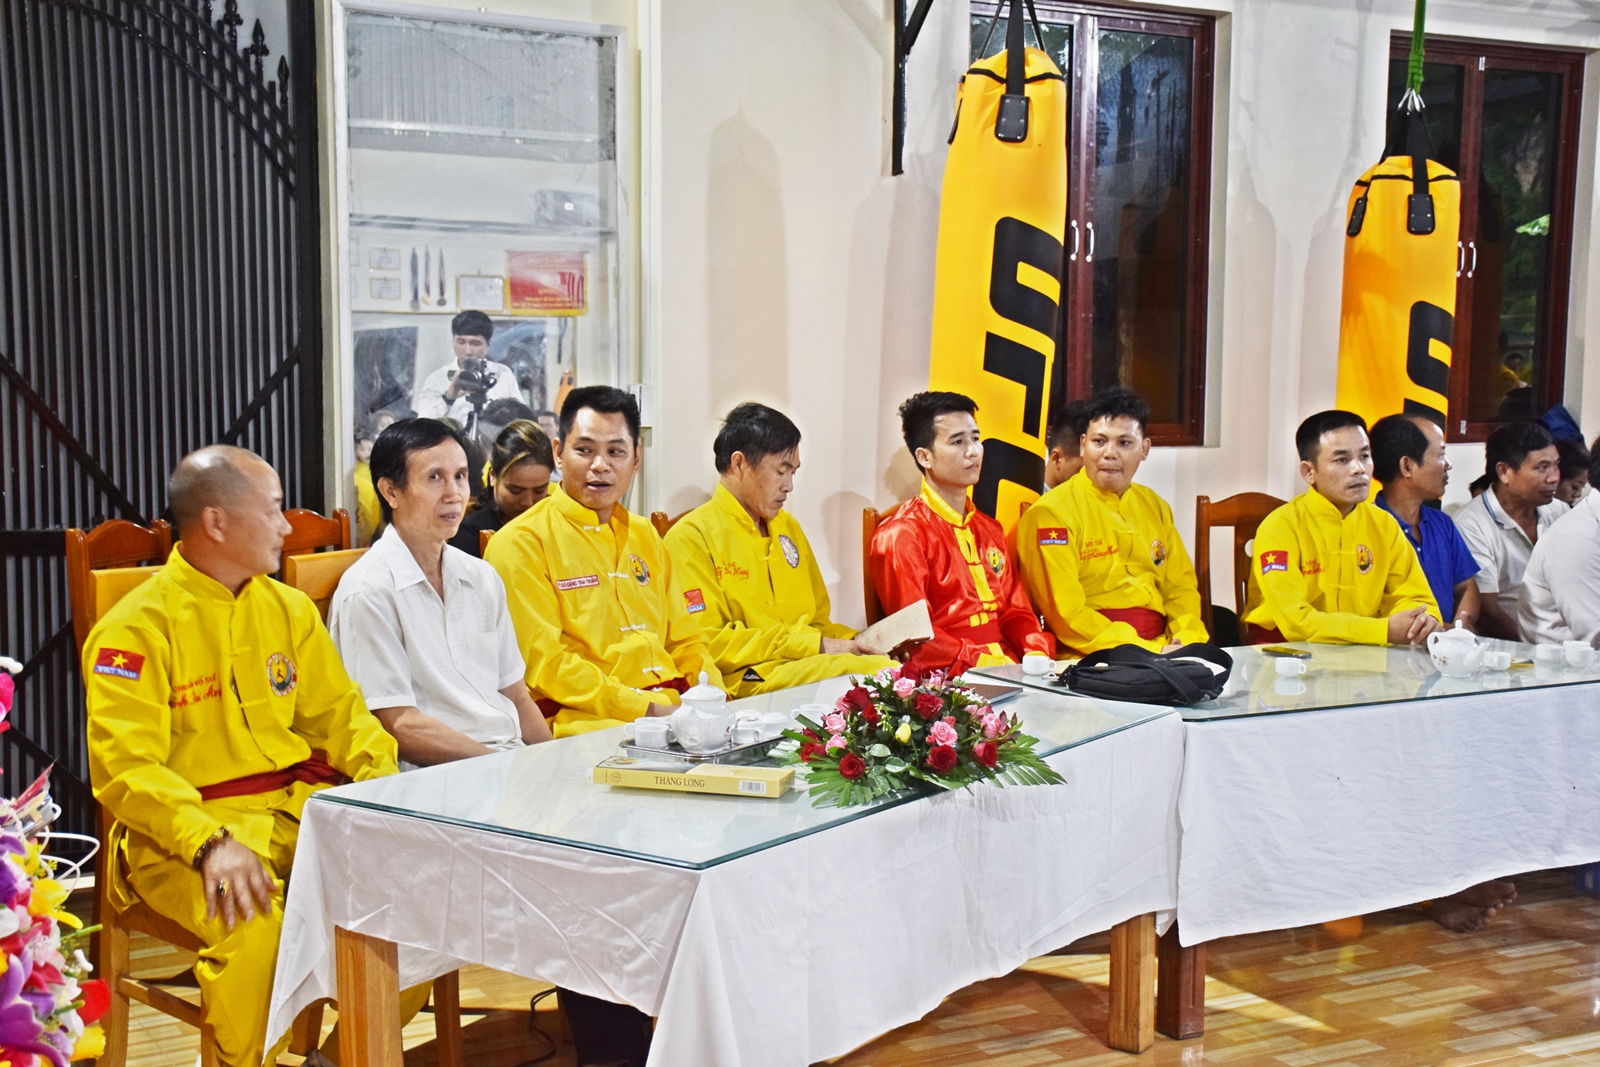 Ra mắt chi nhánh tài năng trẻ Việt Nam tại Sơn La - Hình 5